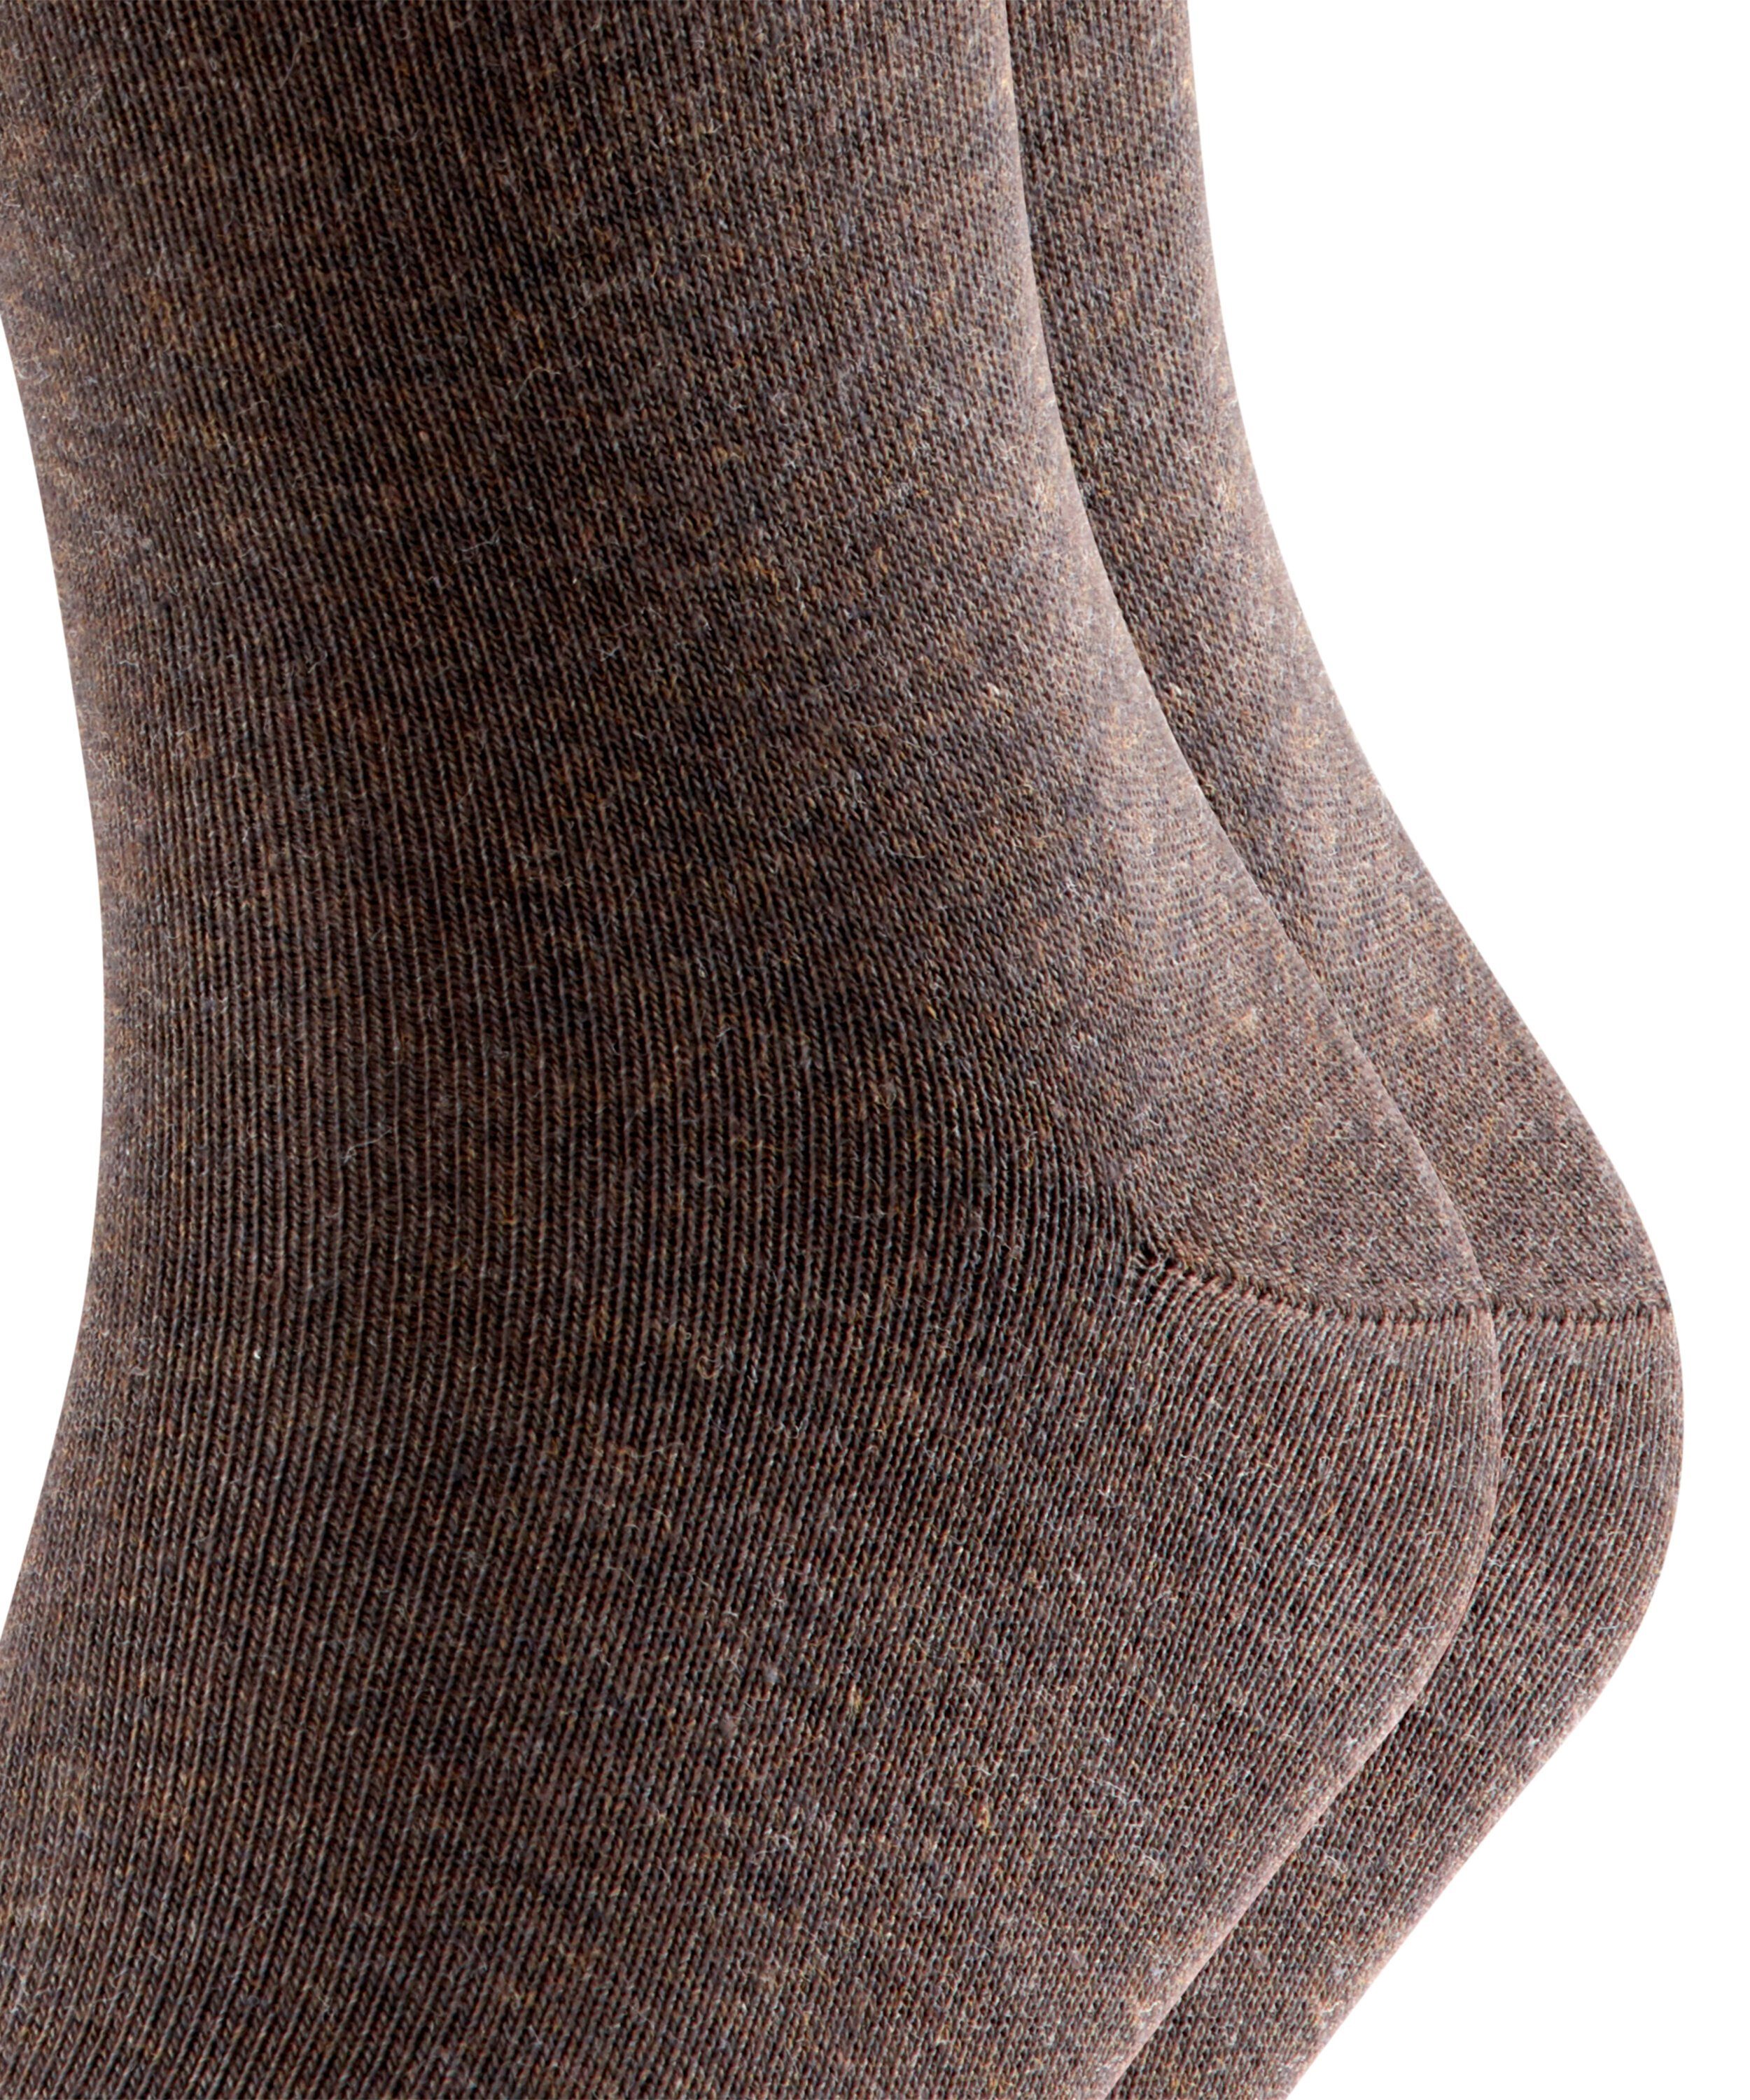 FALKE Socken Happy 2-Pack (2-Paar) (5450) dark brown